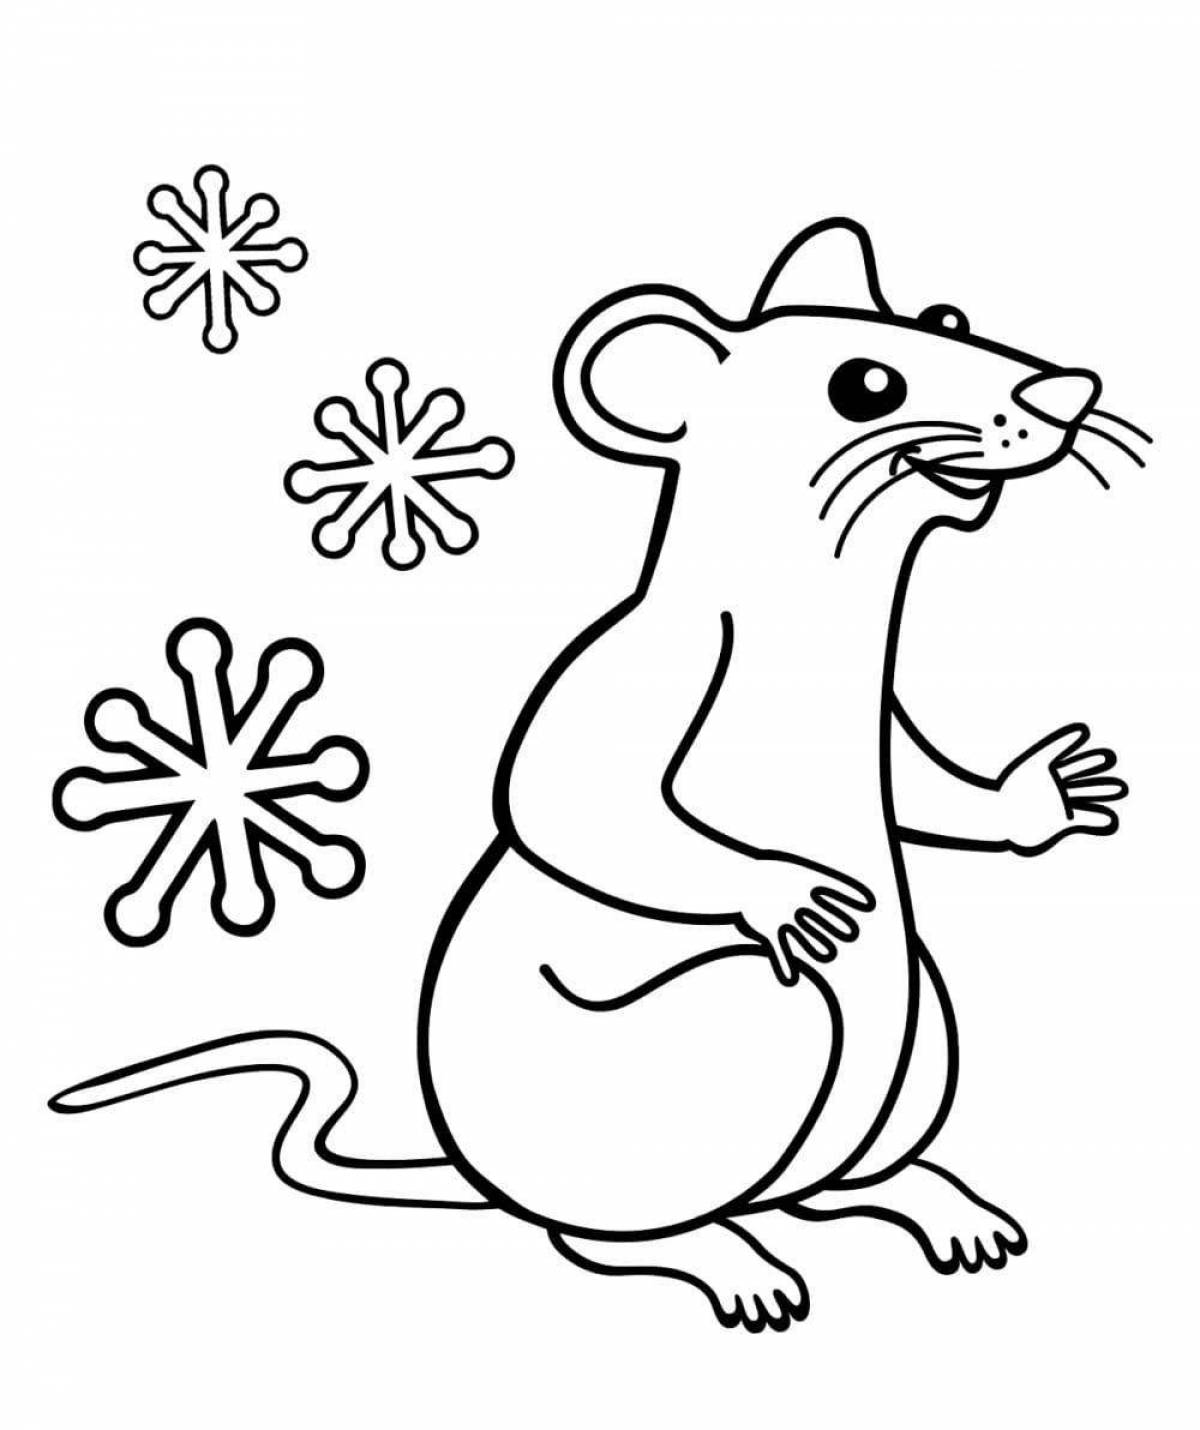 Экспрессивная раскраска крыса